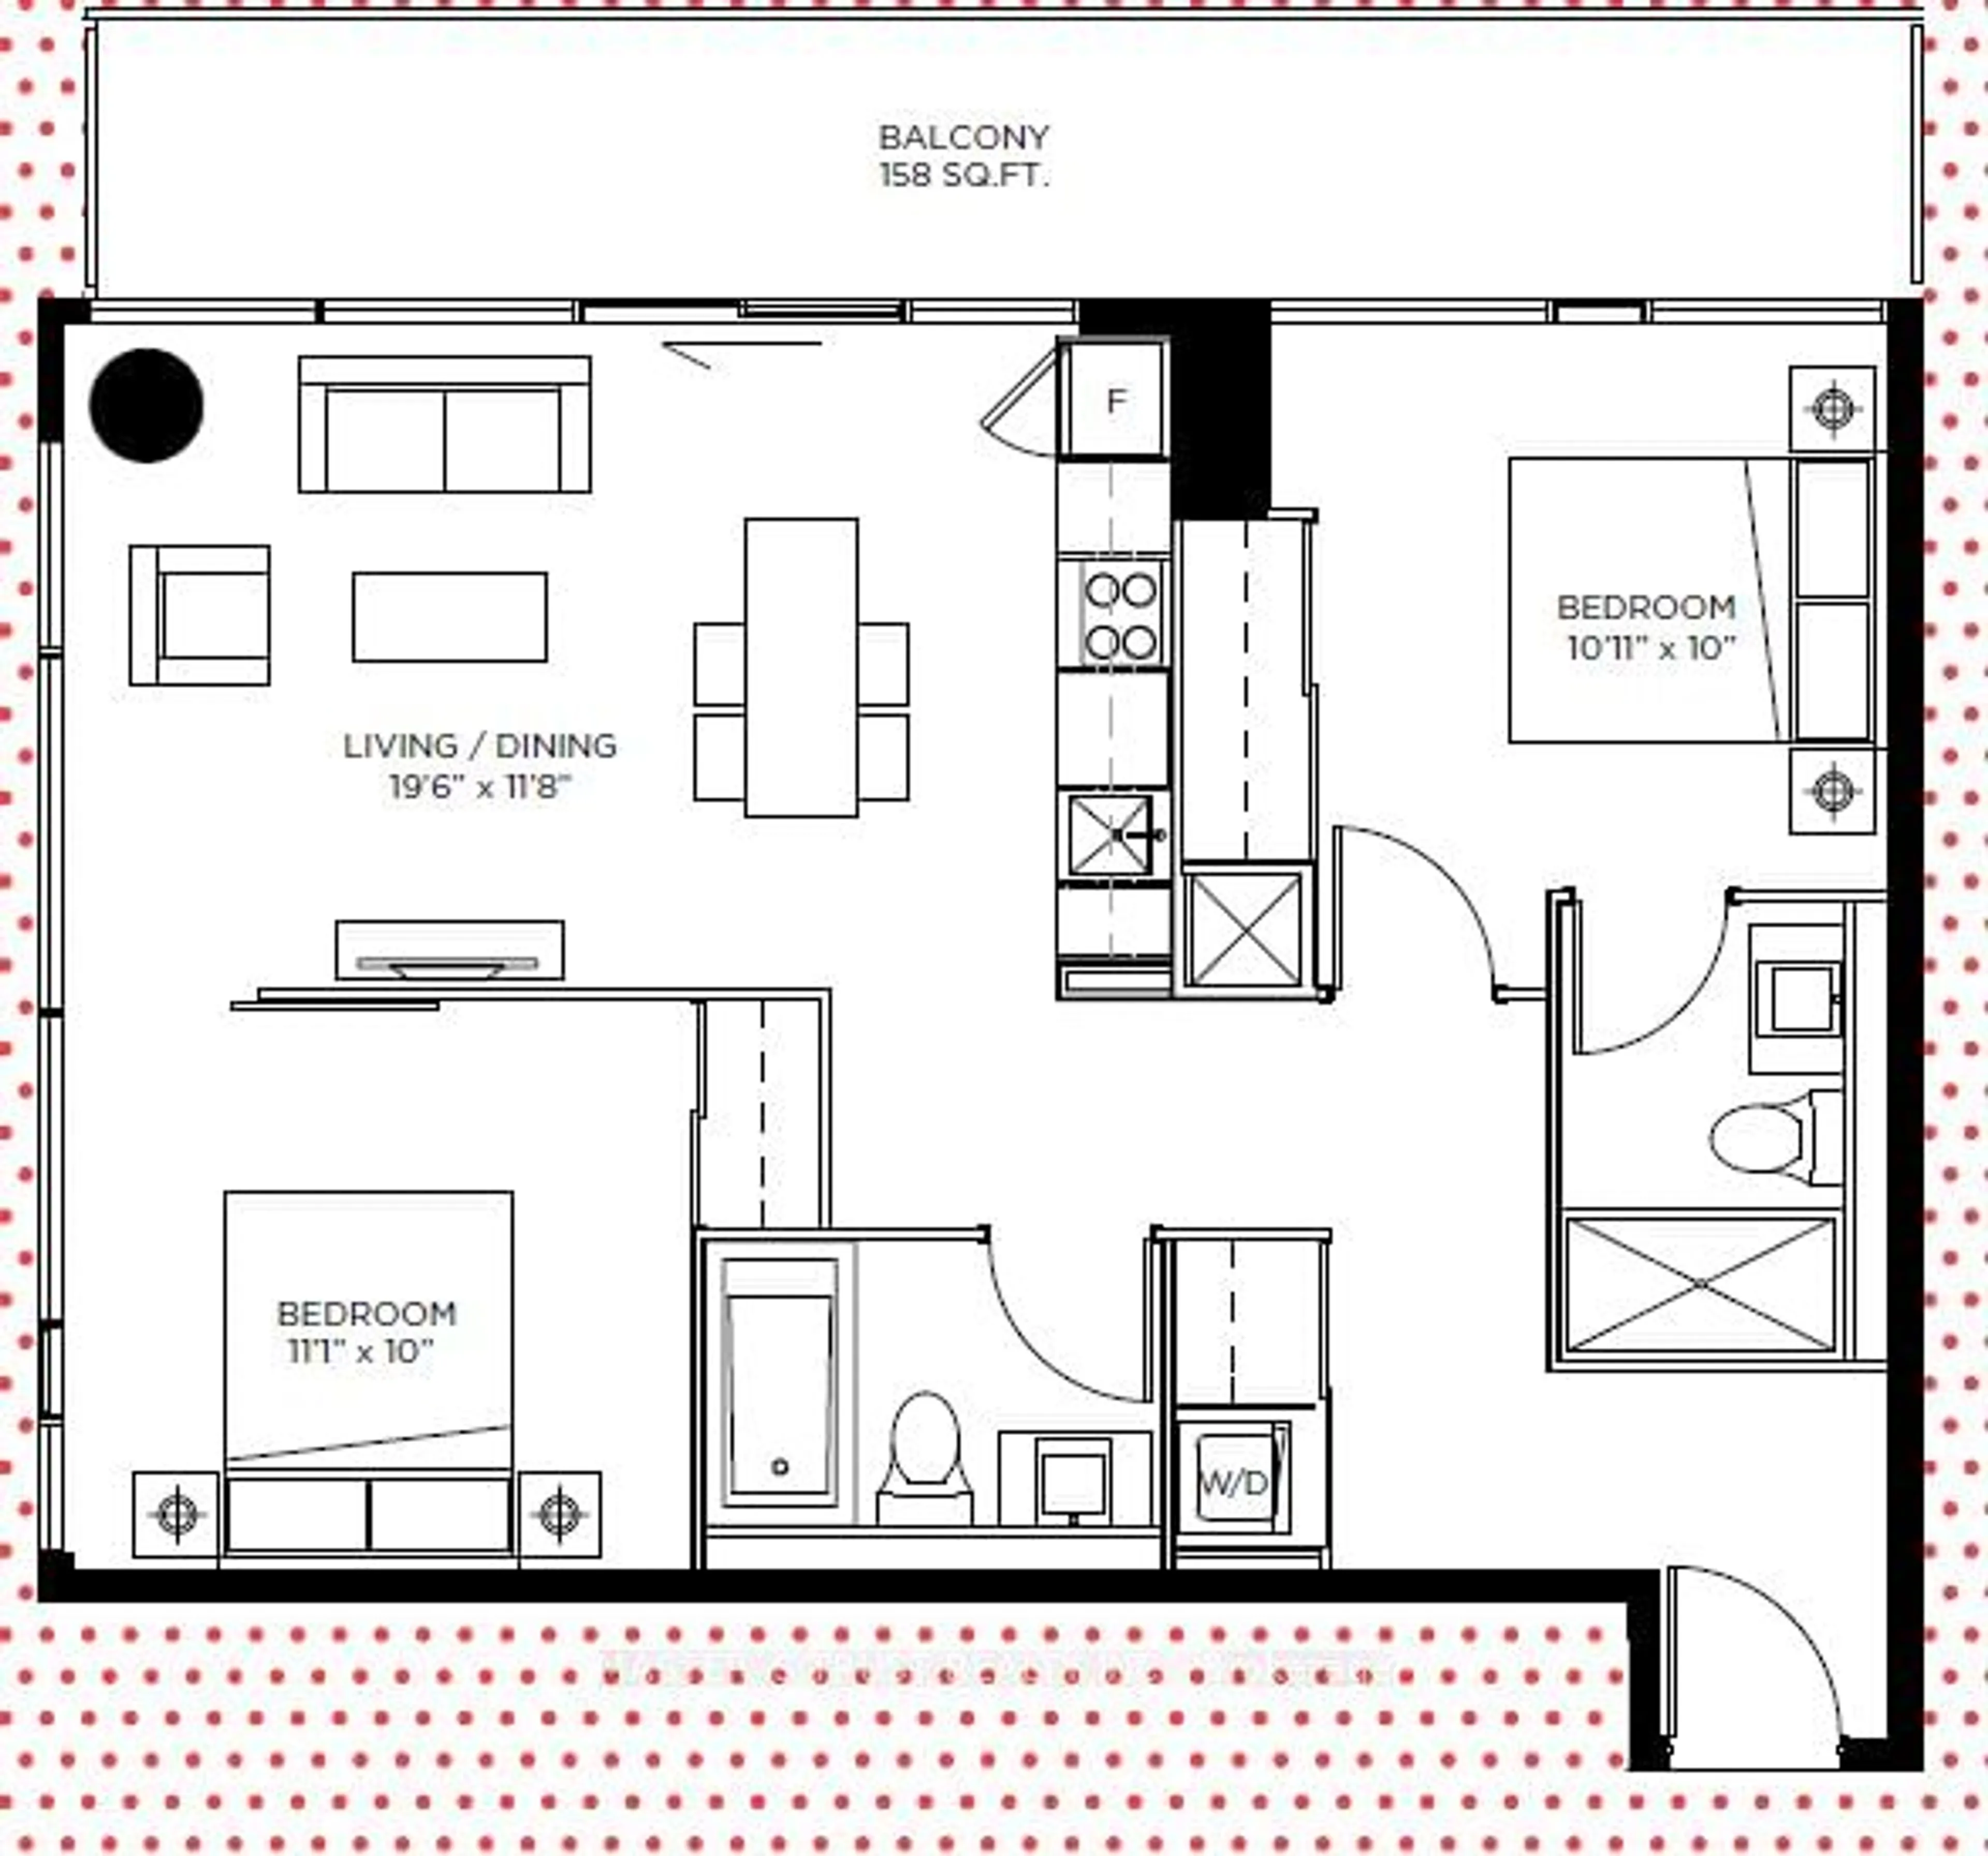 Floor plan for 101 Peter St #2511, Toronto Ontario M5V 0G6